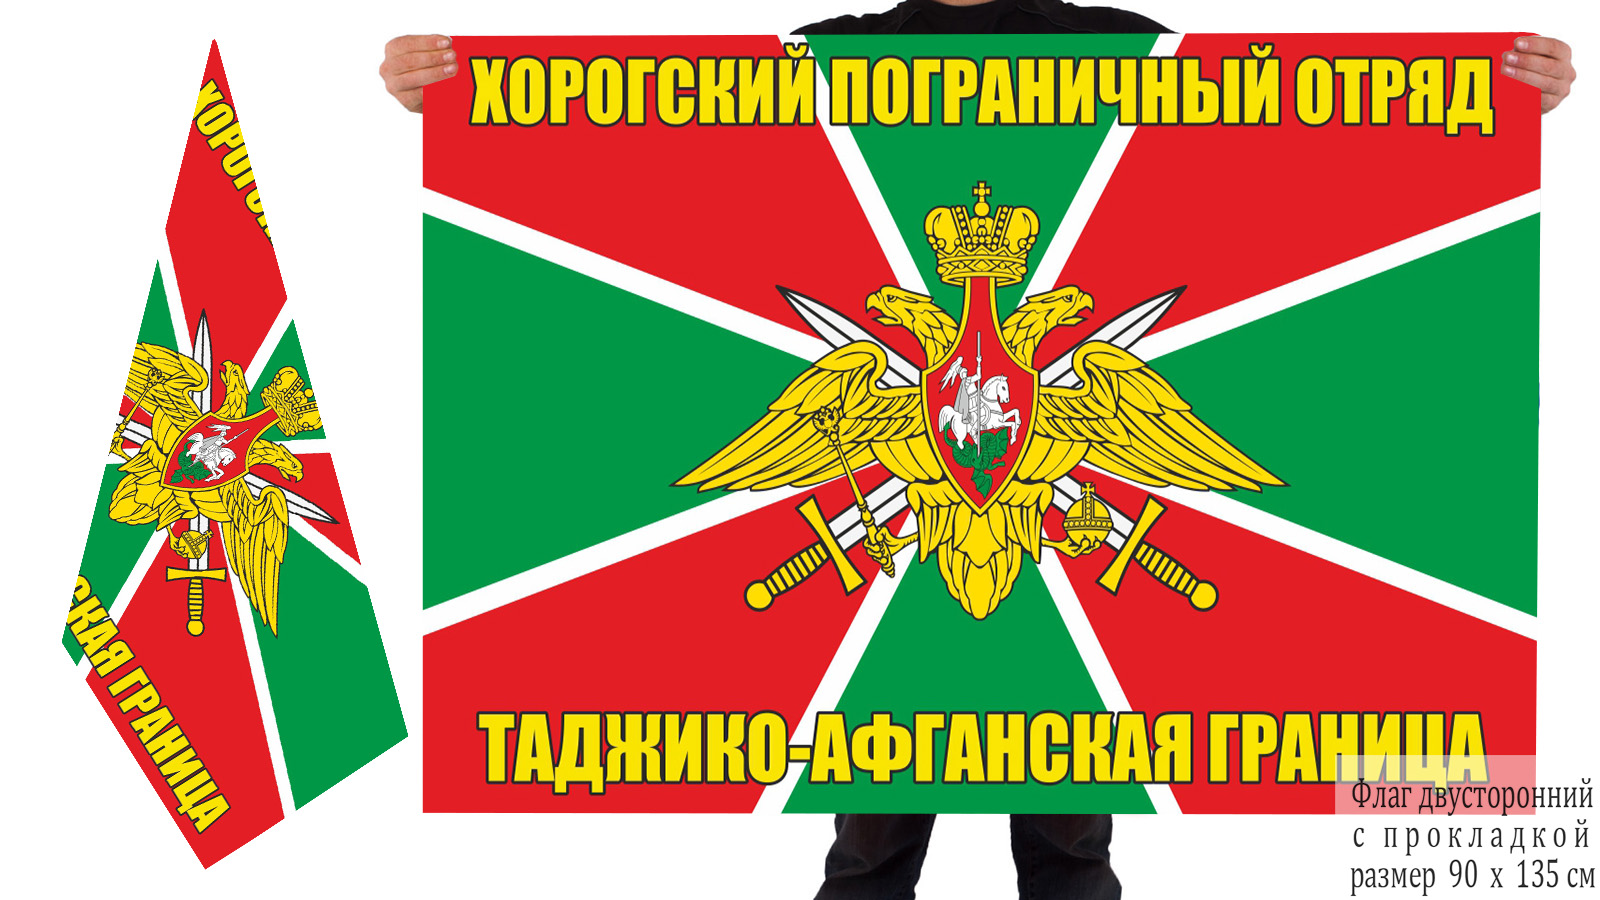 Двусторонний флаг Хорогского ПогО с доставкой